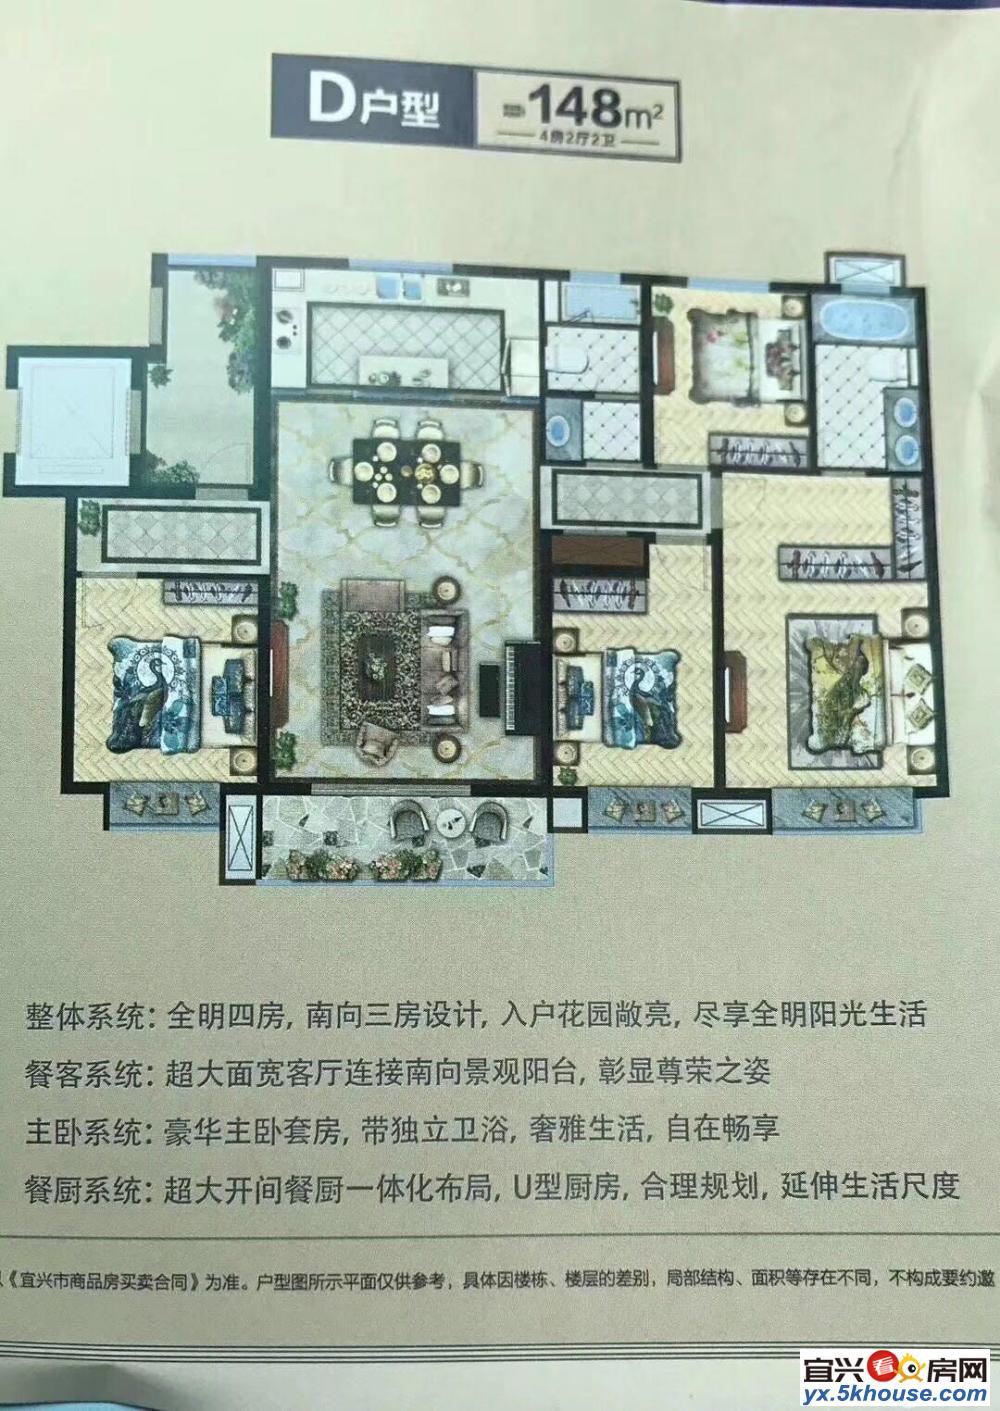 上海新苑 18 19复式,243平米,5房4室2.卫,精装